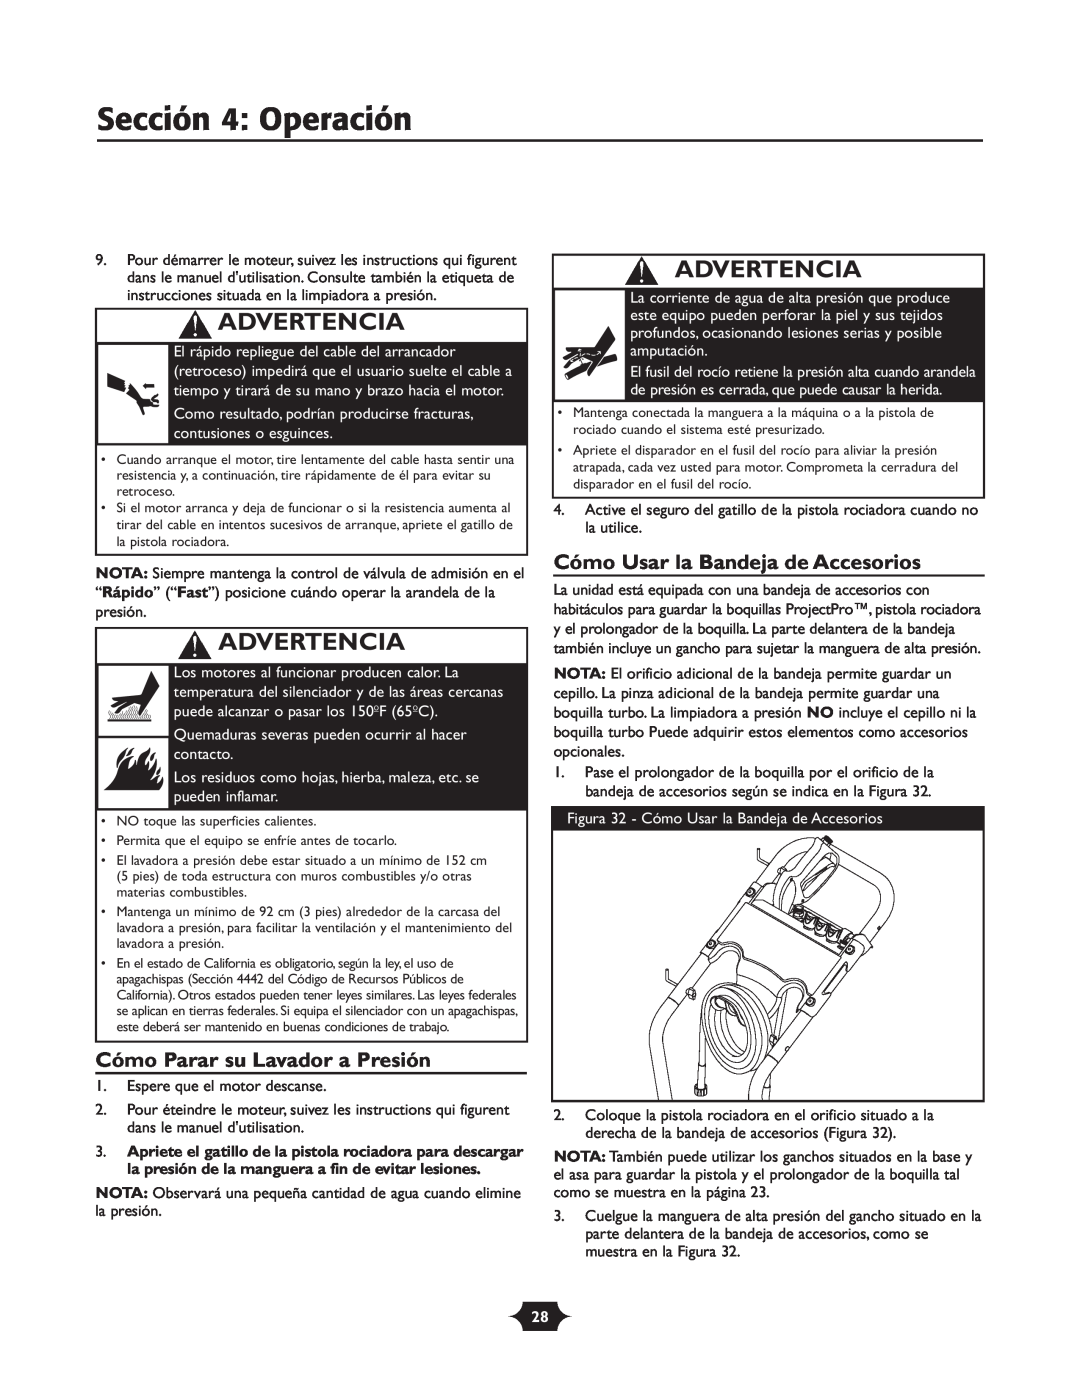 Troy-Bilt 020242-1 Sección 4 Operación, Cómo Parar su Lavador a Presión, Cómo Usar la Bandeja de Accesorios, Advertencia 